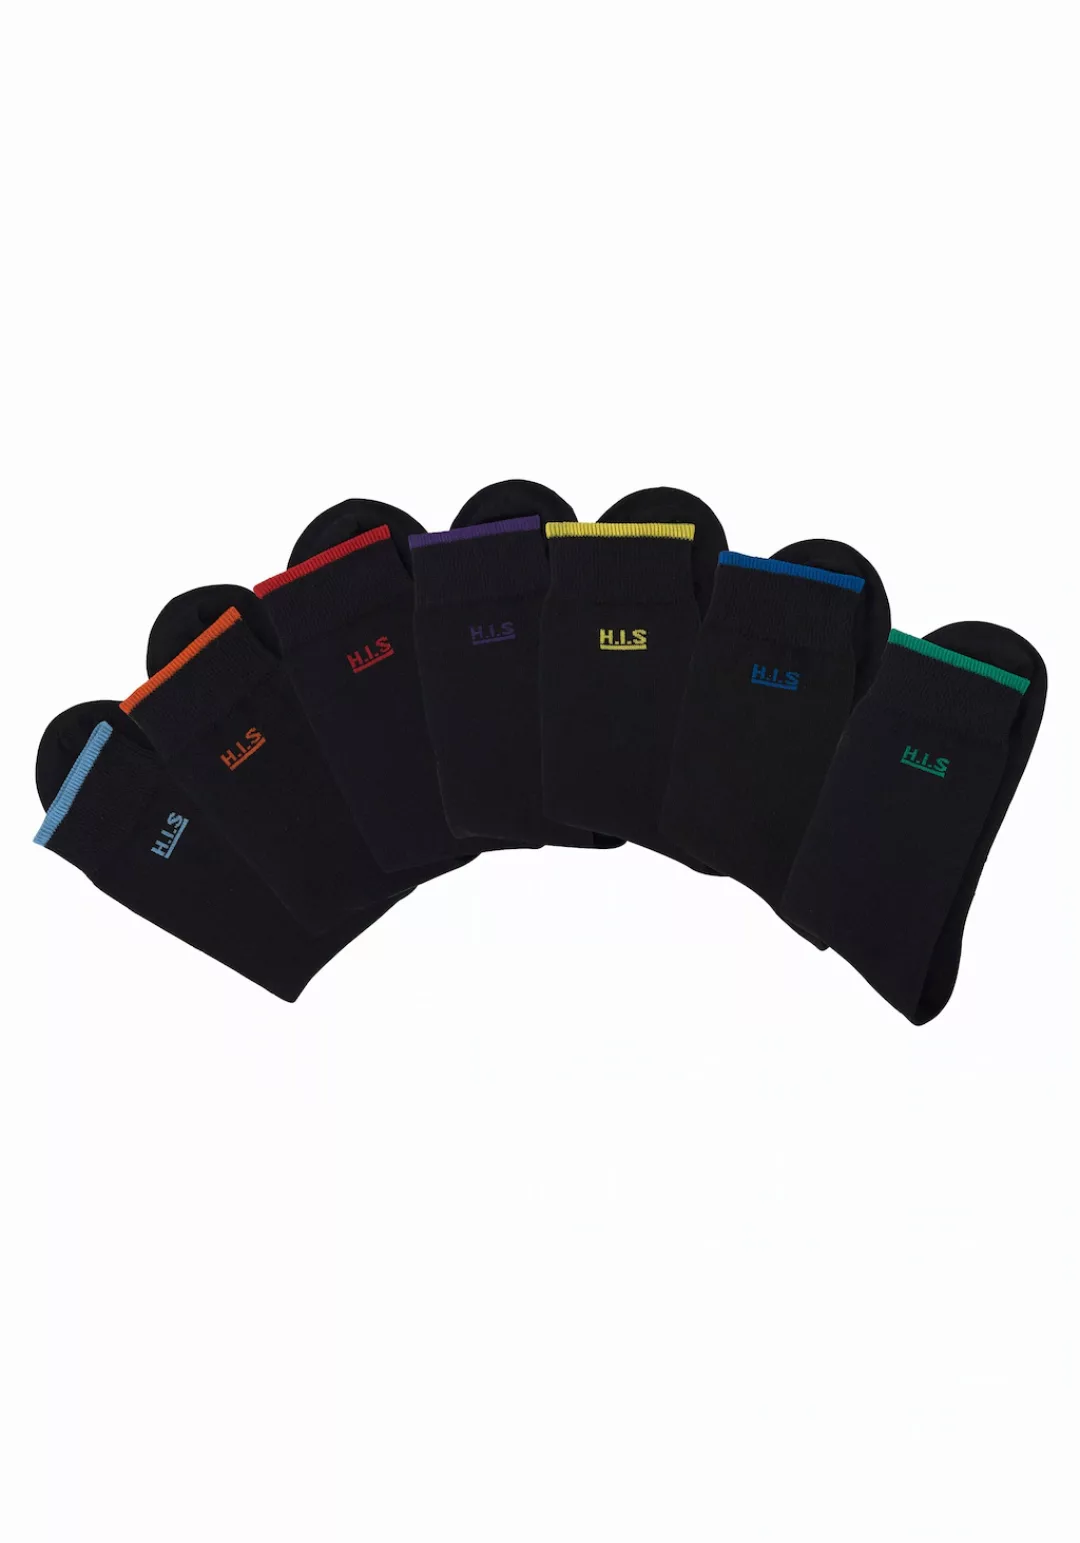 H.I.S Socken, (Packung, 7 Paar), mit farbigen Bündchen günstig online kaufen